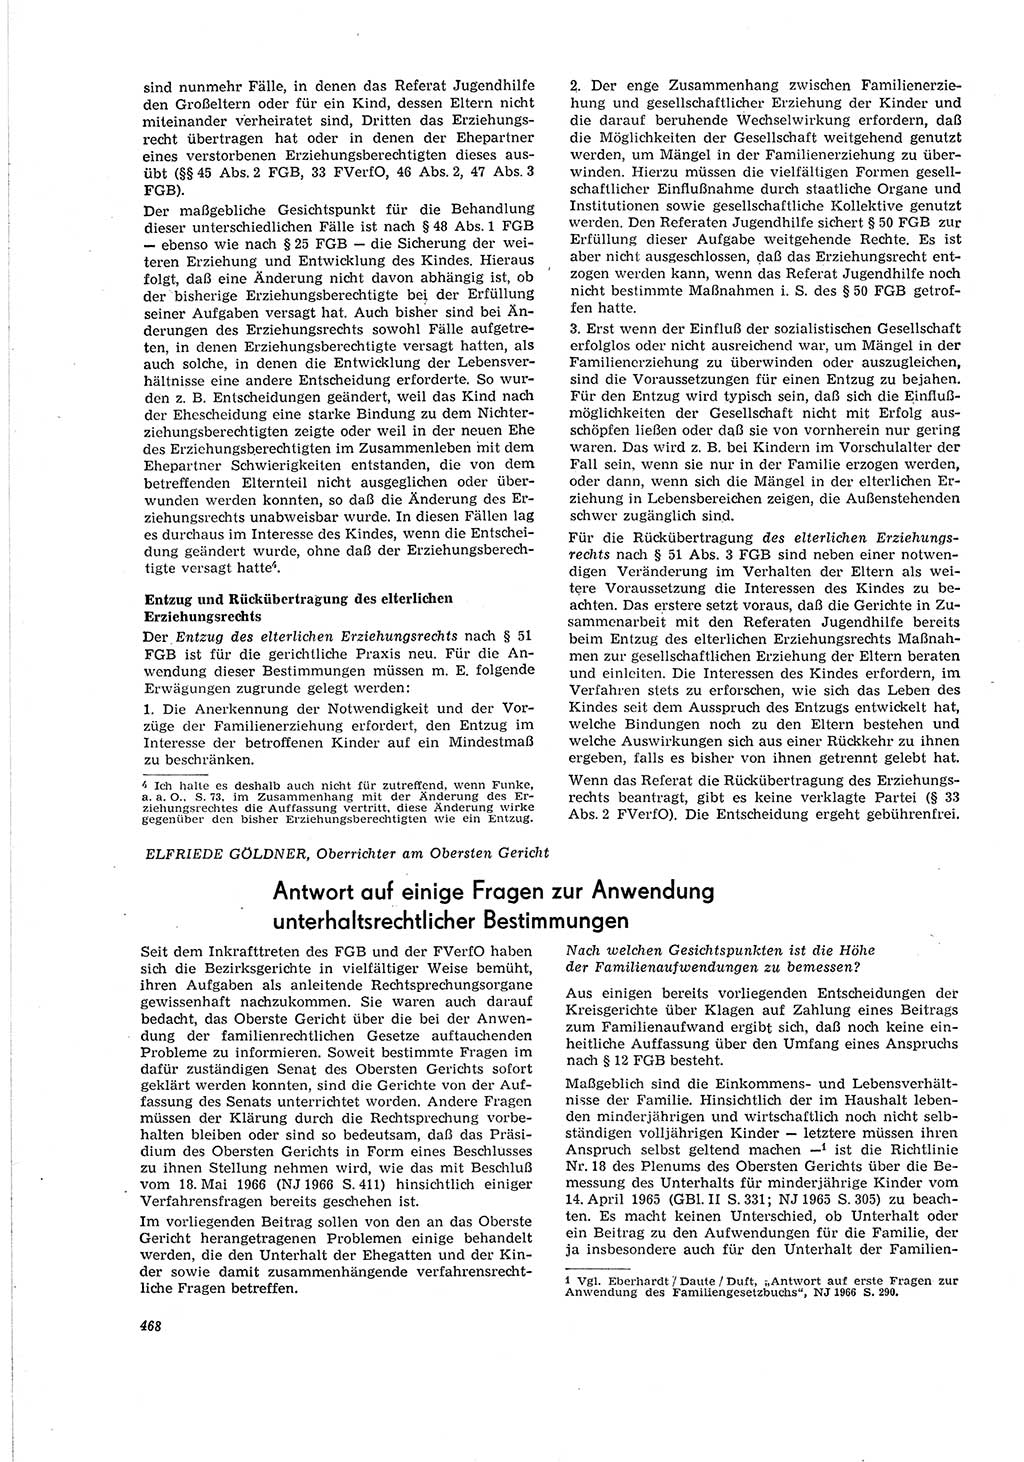 Neue Justiz (NJ), Zeitschrift für Recht und Rechtswissenschaft [Deutsche Demokratische Republik (DDR)], 20. Jahrgang 1966, Seite 468 (NJ DDR 1966, S. 468)